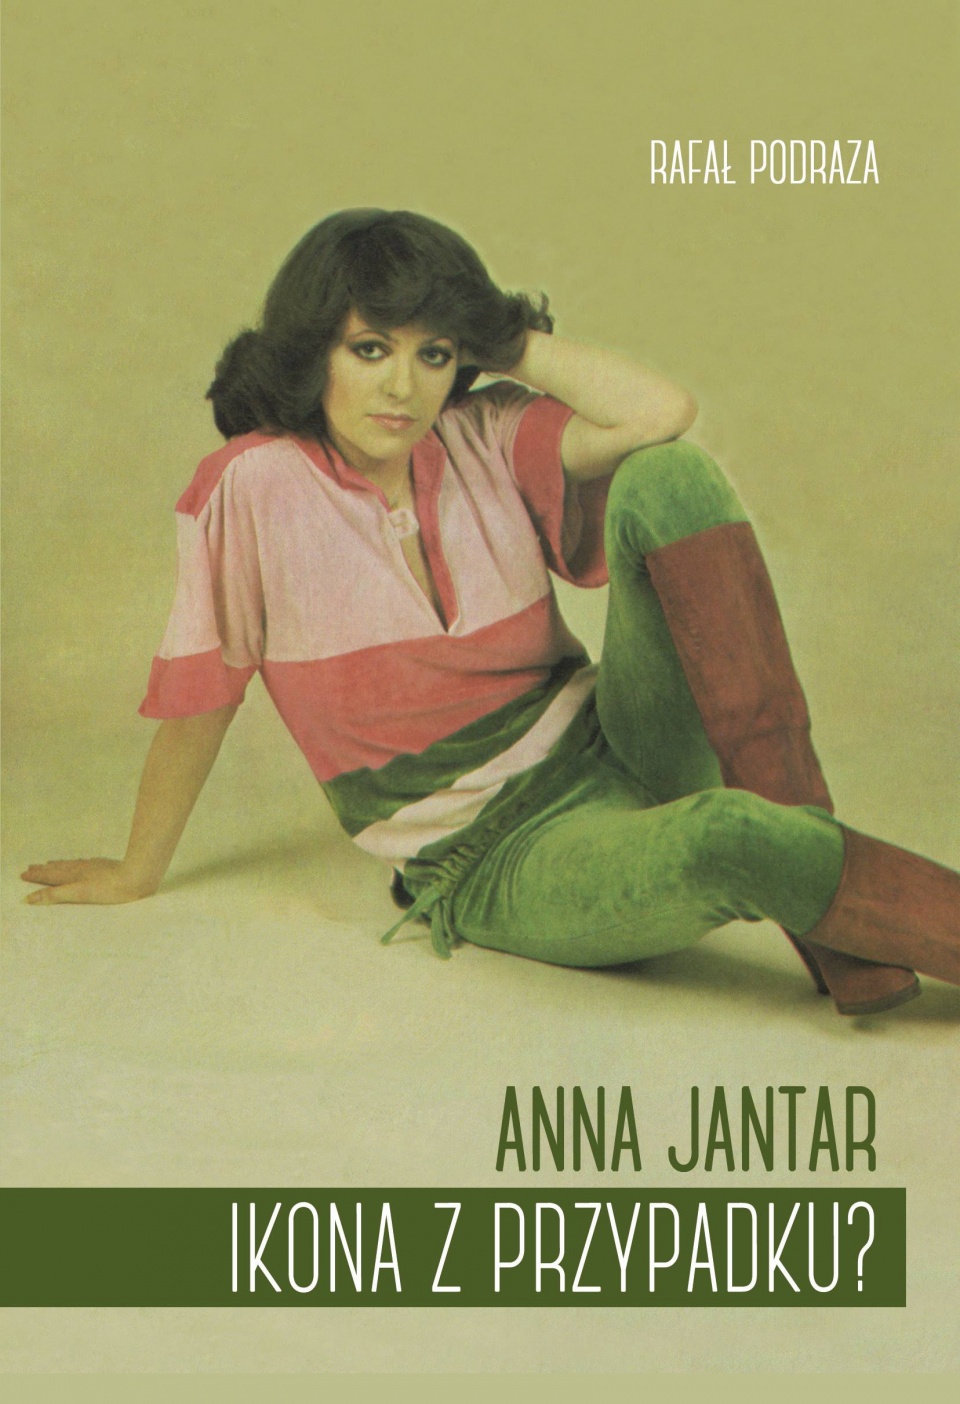 Okładka książki "Anna Jantar. Ikona z przypadku?" - materiały prasowe.